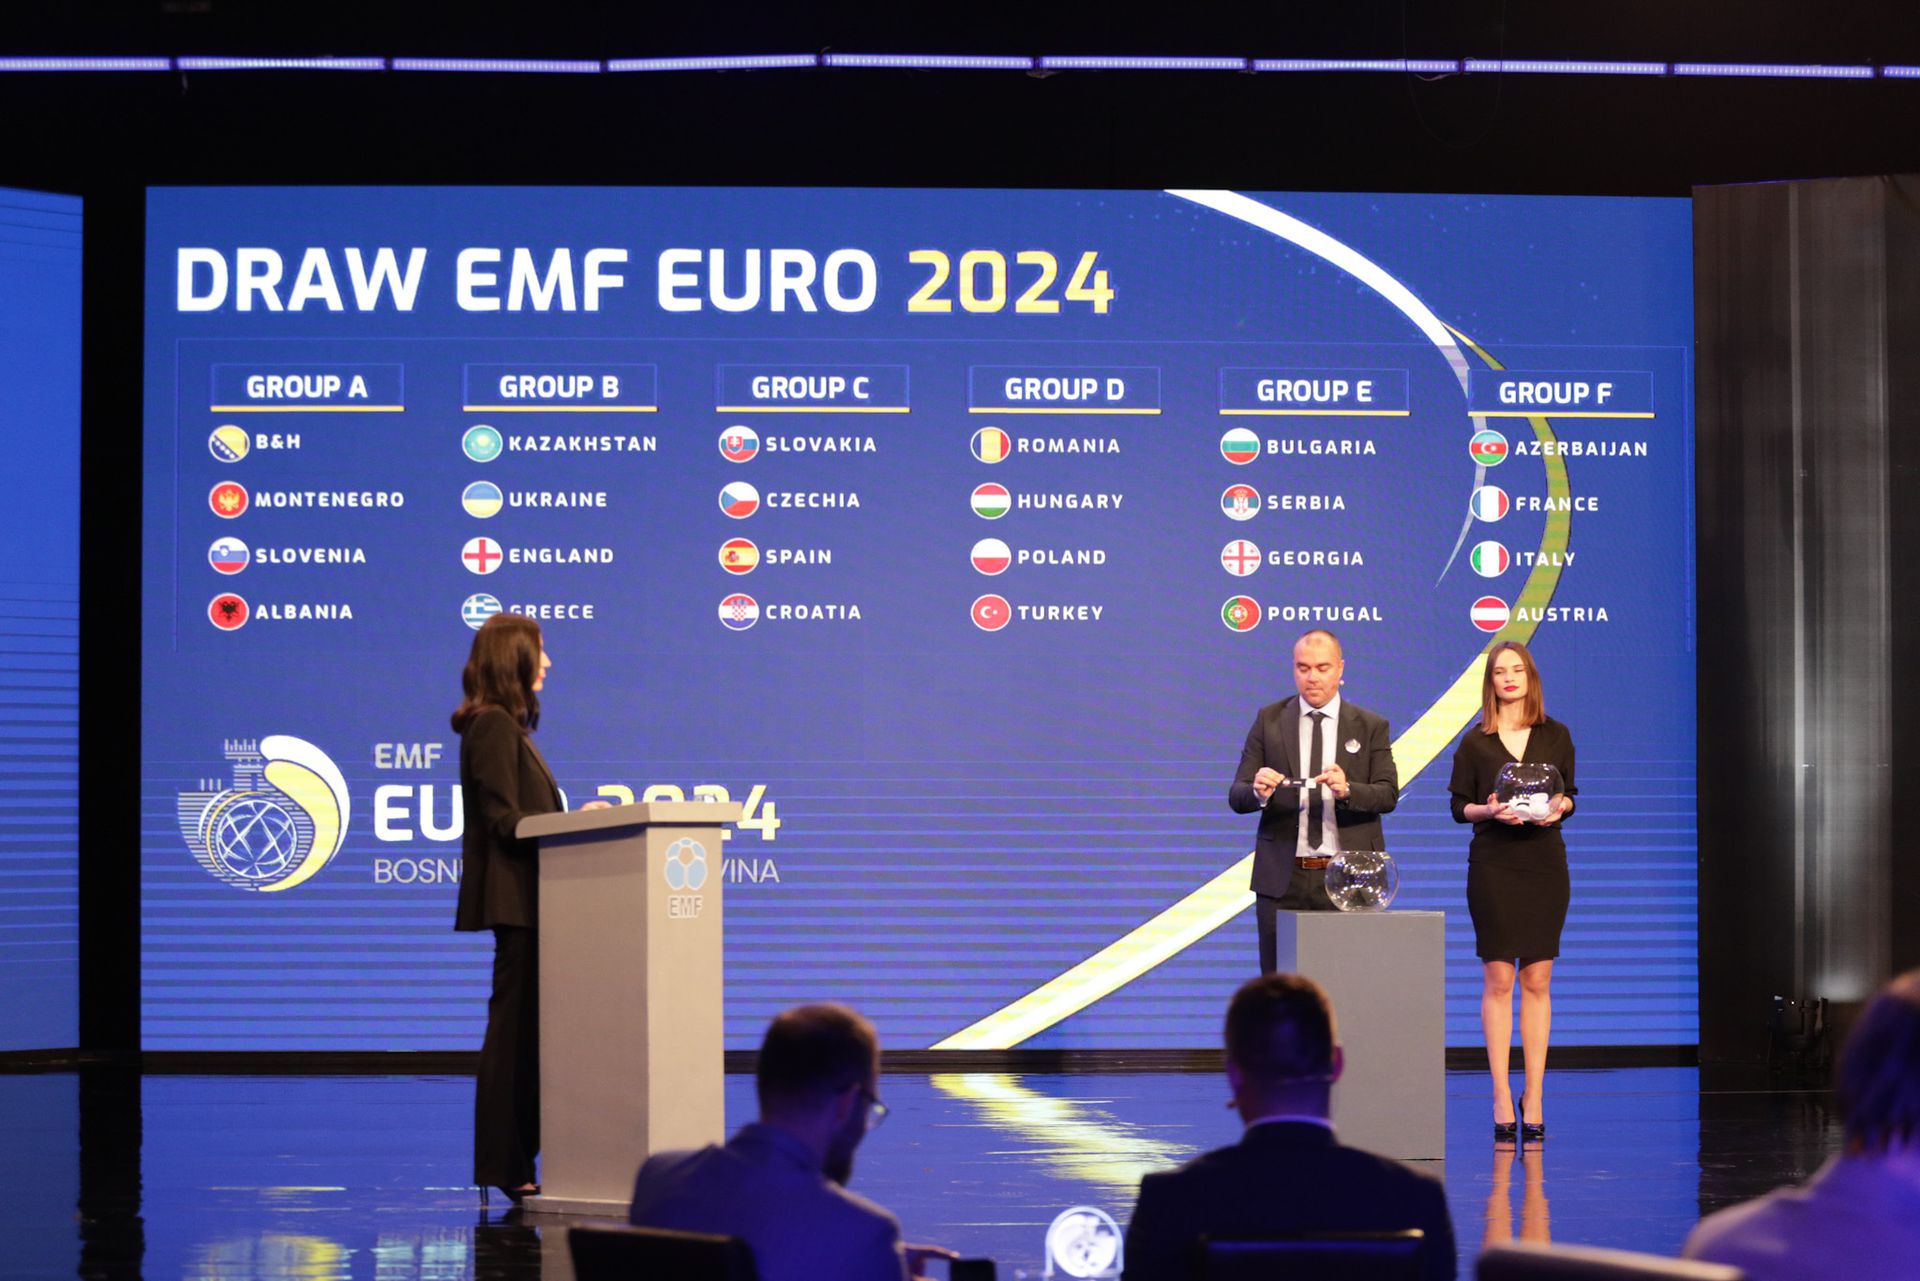 Žreb EMF EURO 2024, zdroj: SZMF